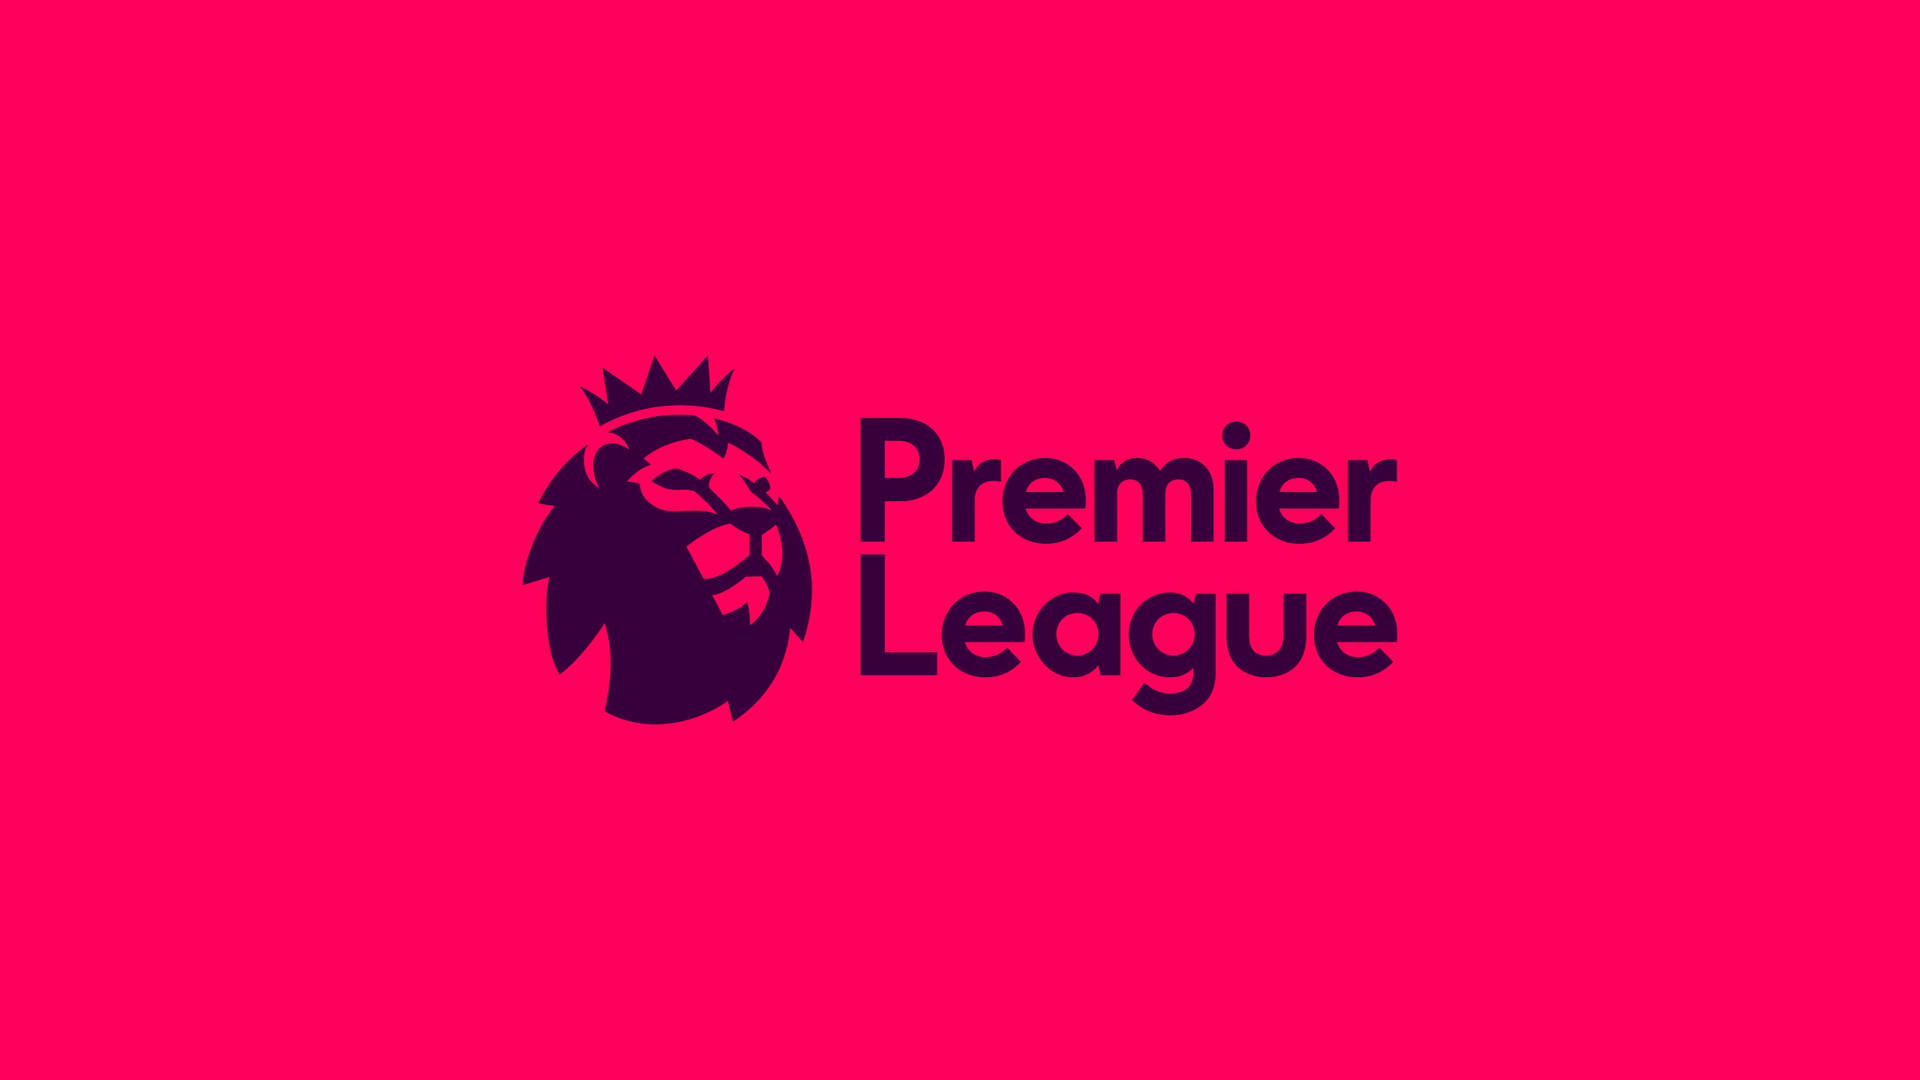 Premier League In Dark Pink Background